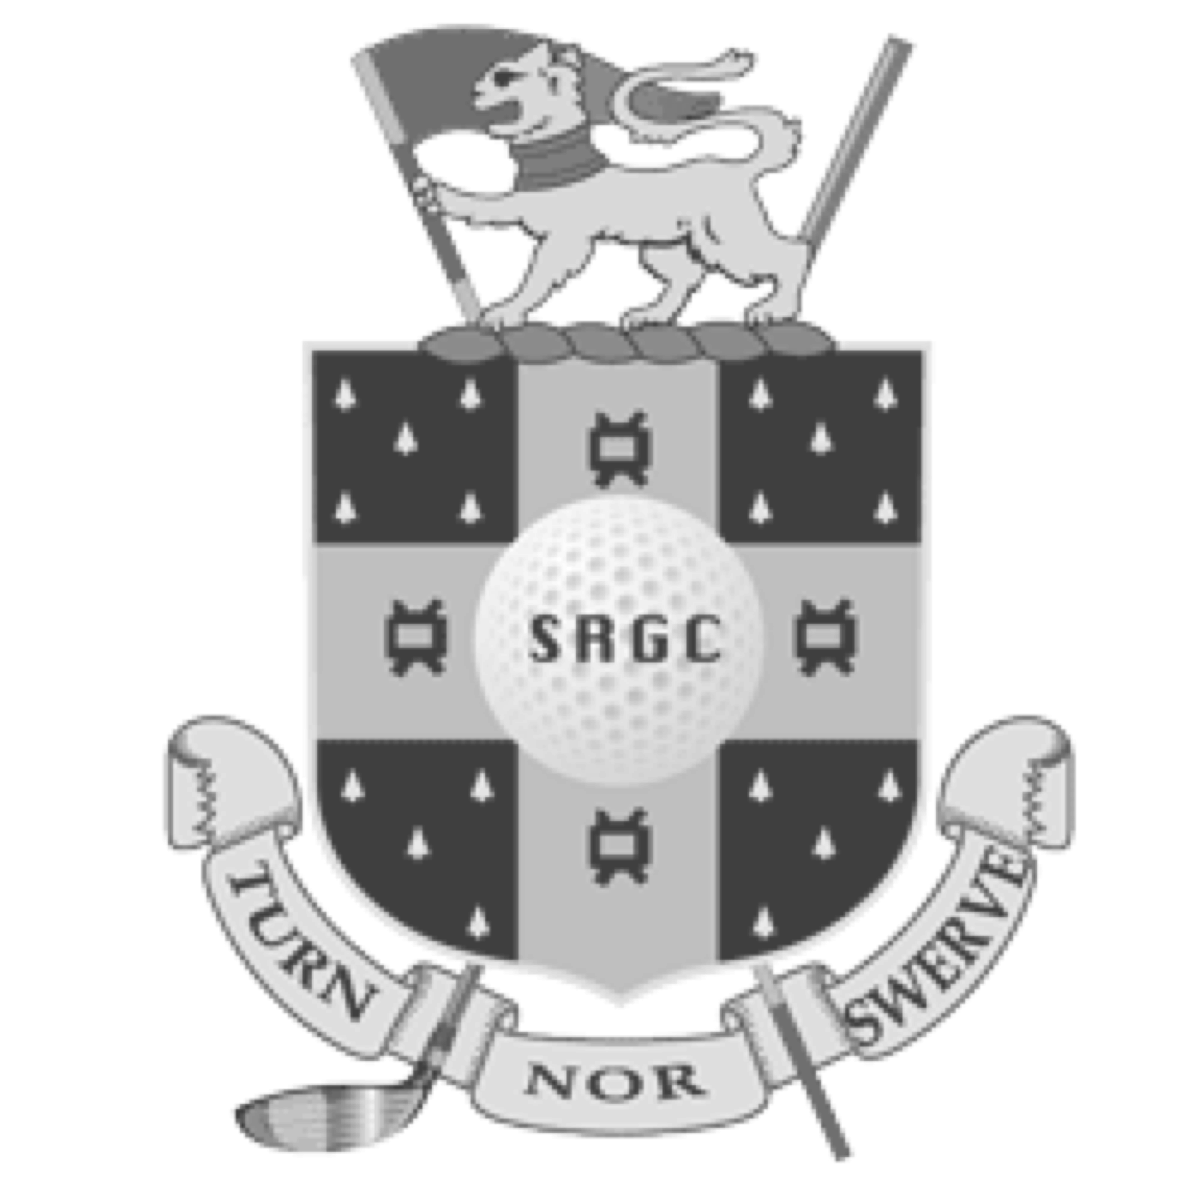 Stoke Rochford Golf Club coat of arms logo